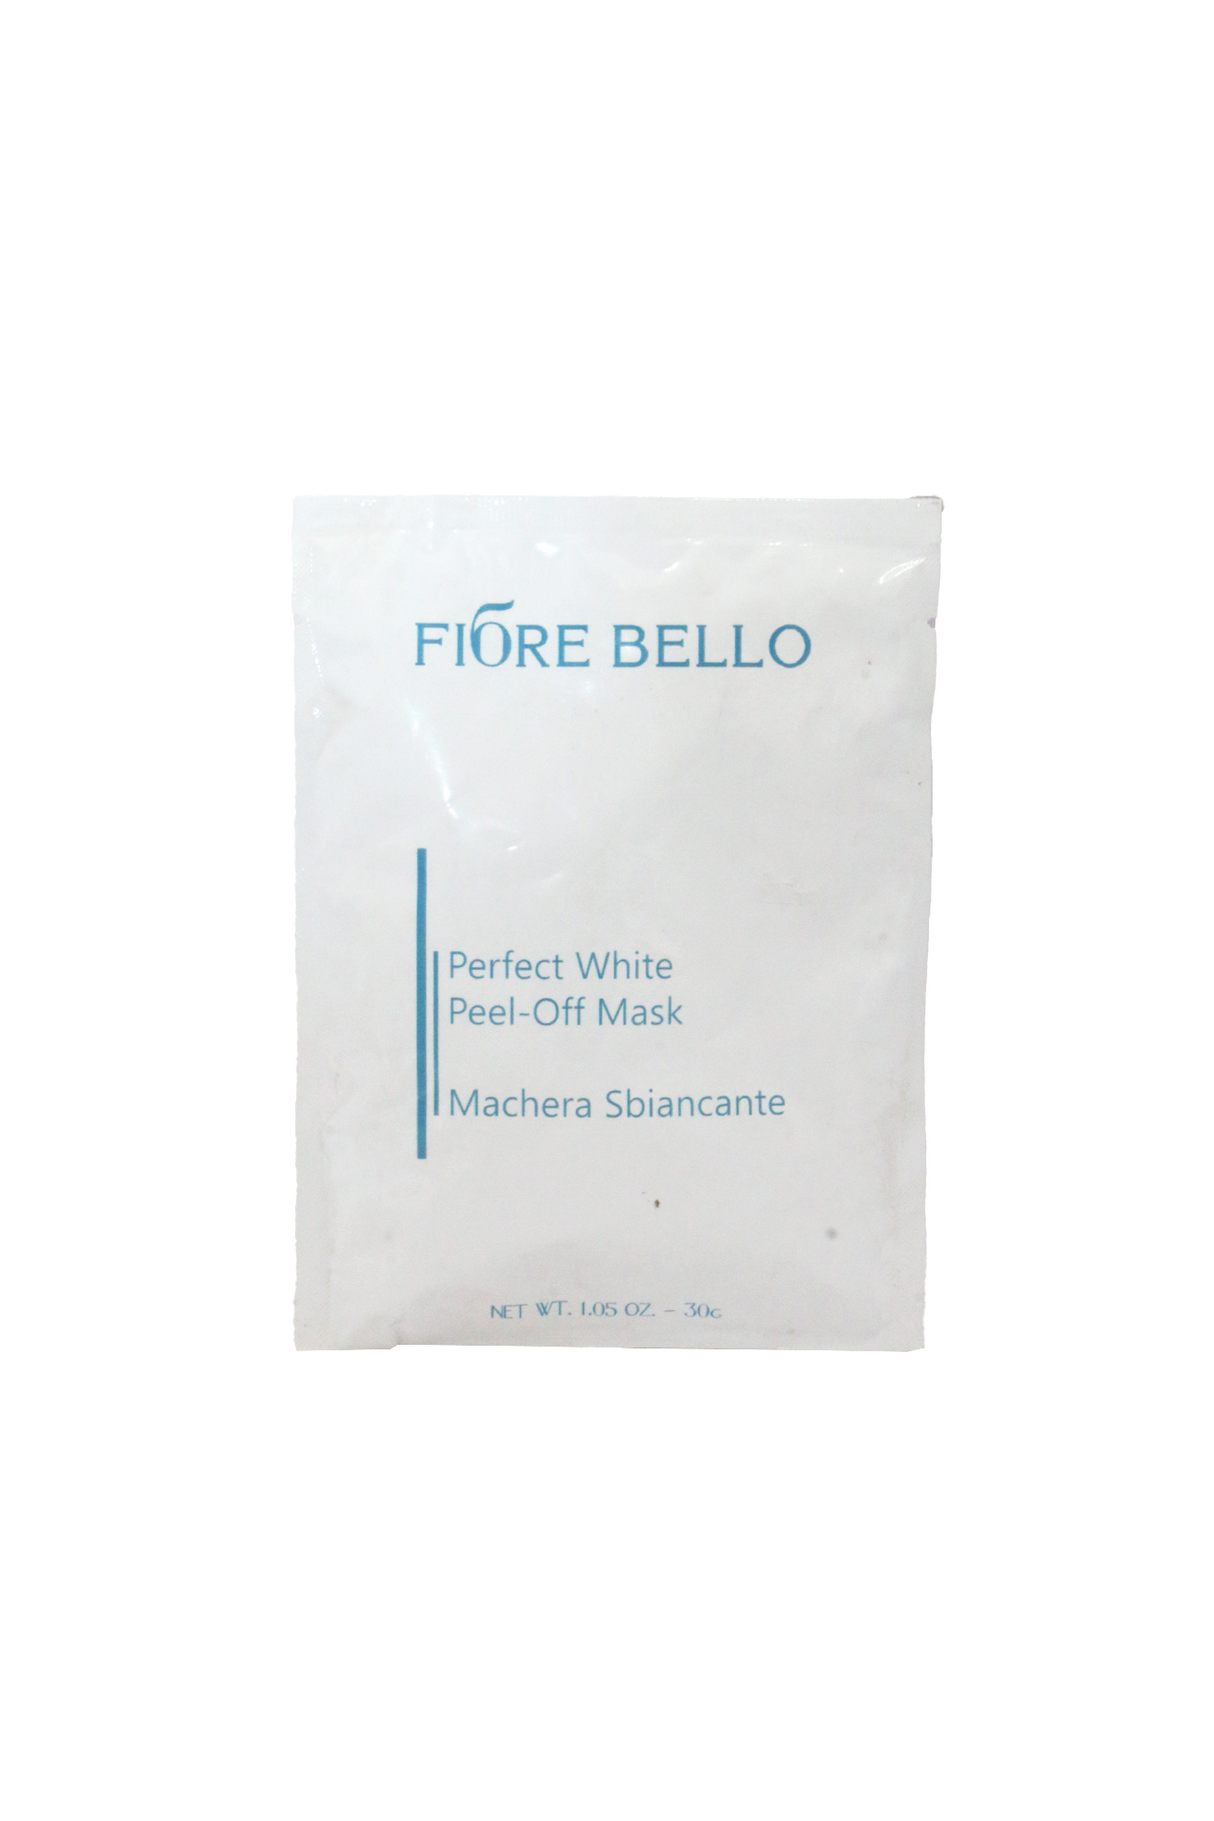 fiore bello perfect white mask 30g